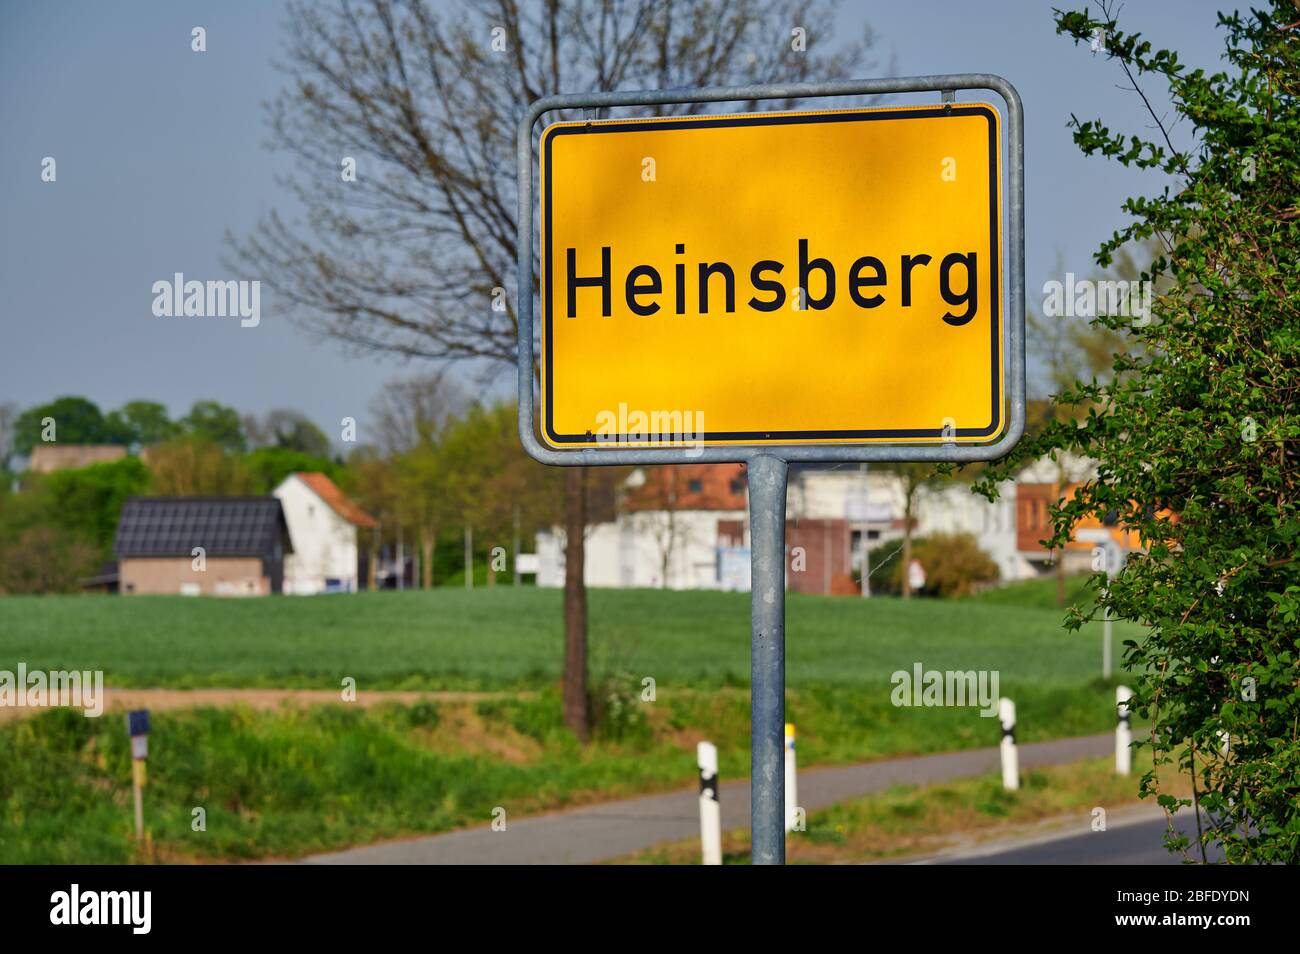 City signe de Heinsberg, Rhénanie-du-Nord-Westphalie, Allemagne, hotspot allemand du virus Corona et éclosion de Covid-19 Banque D'Images